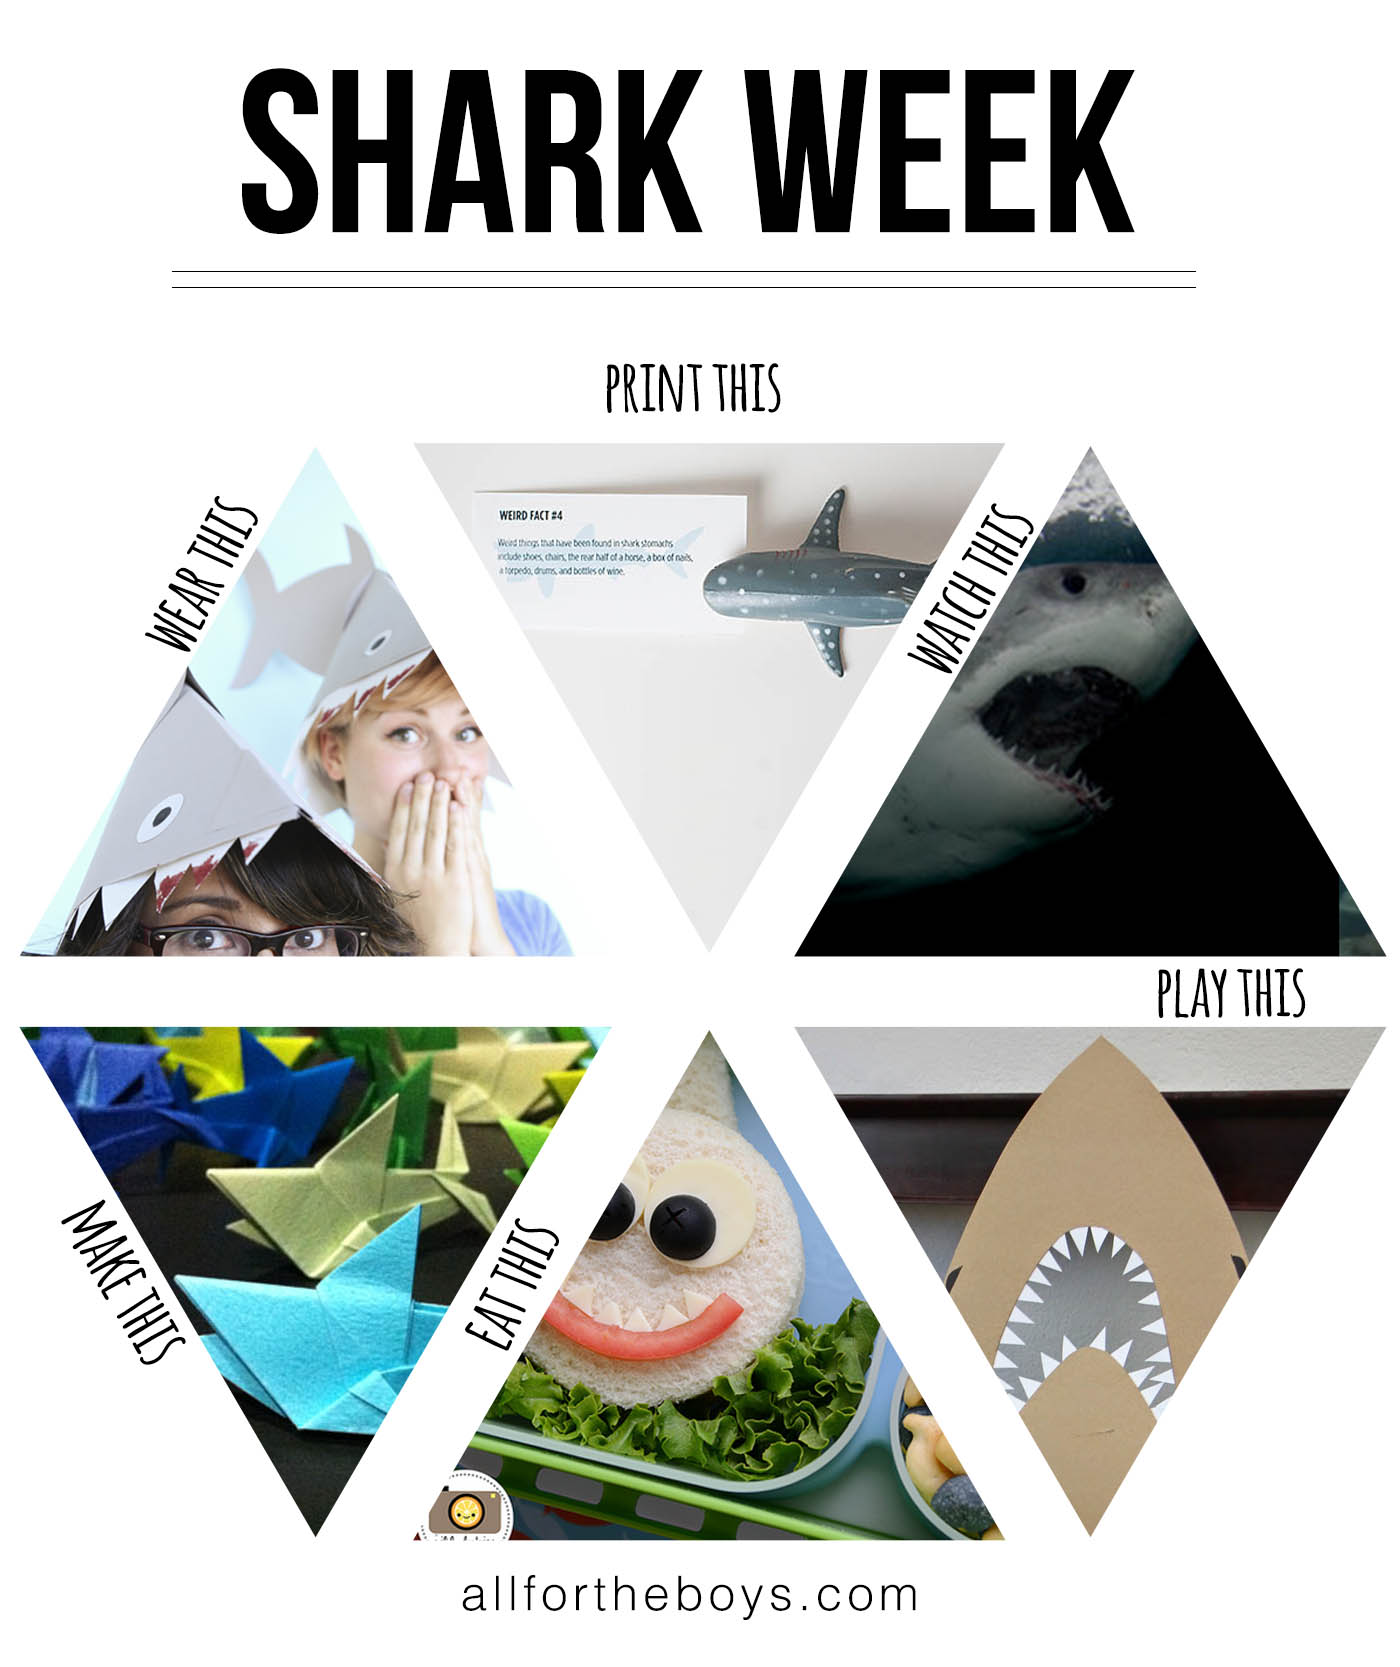 Shark week